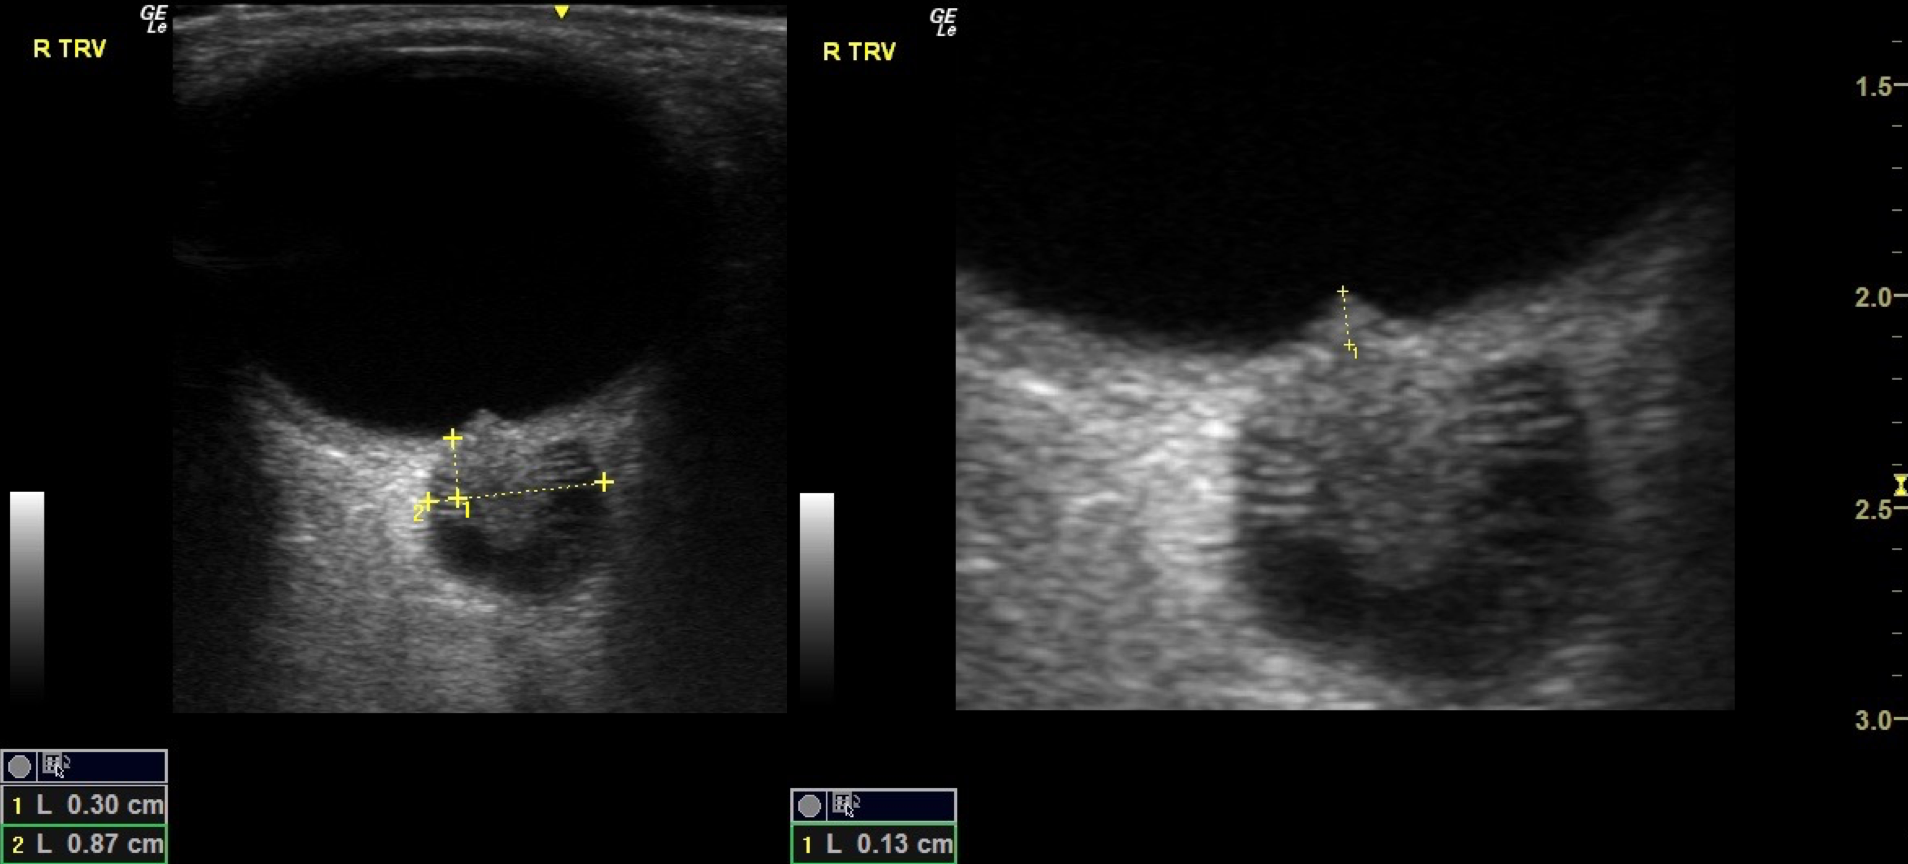 Widened optic nerve sheath and papilledema (ultrasound image)